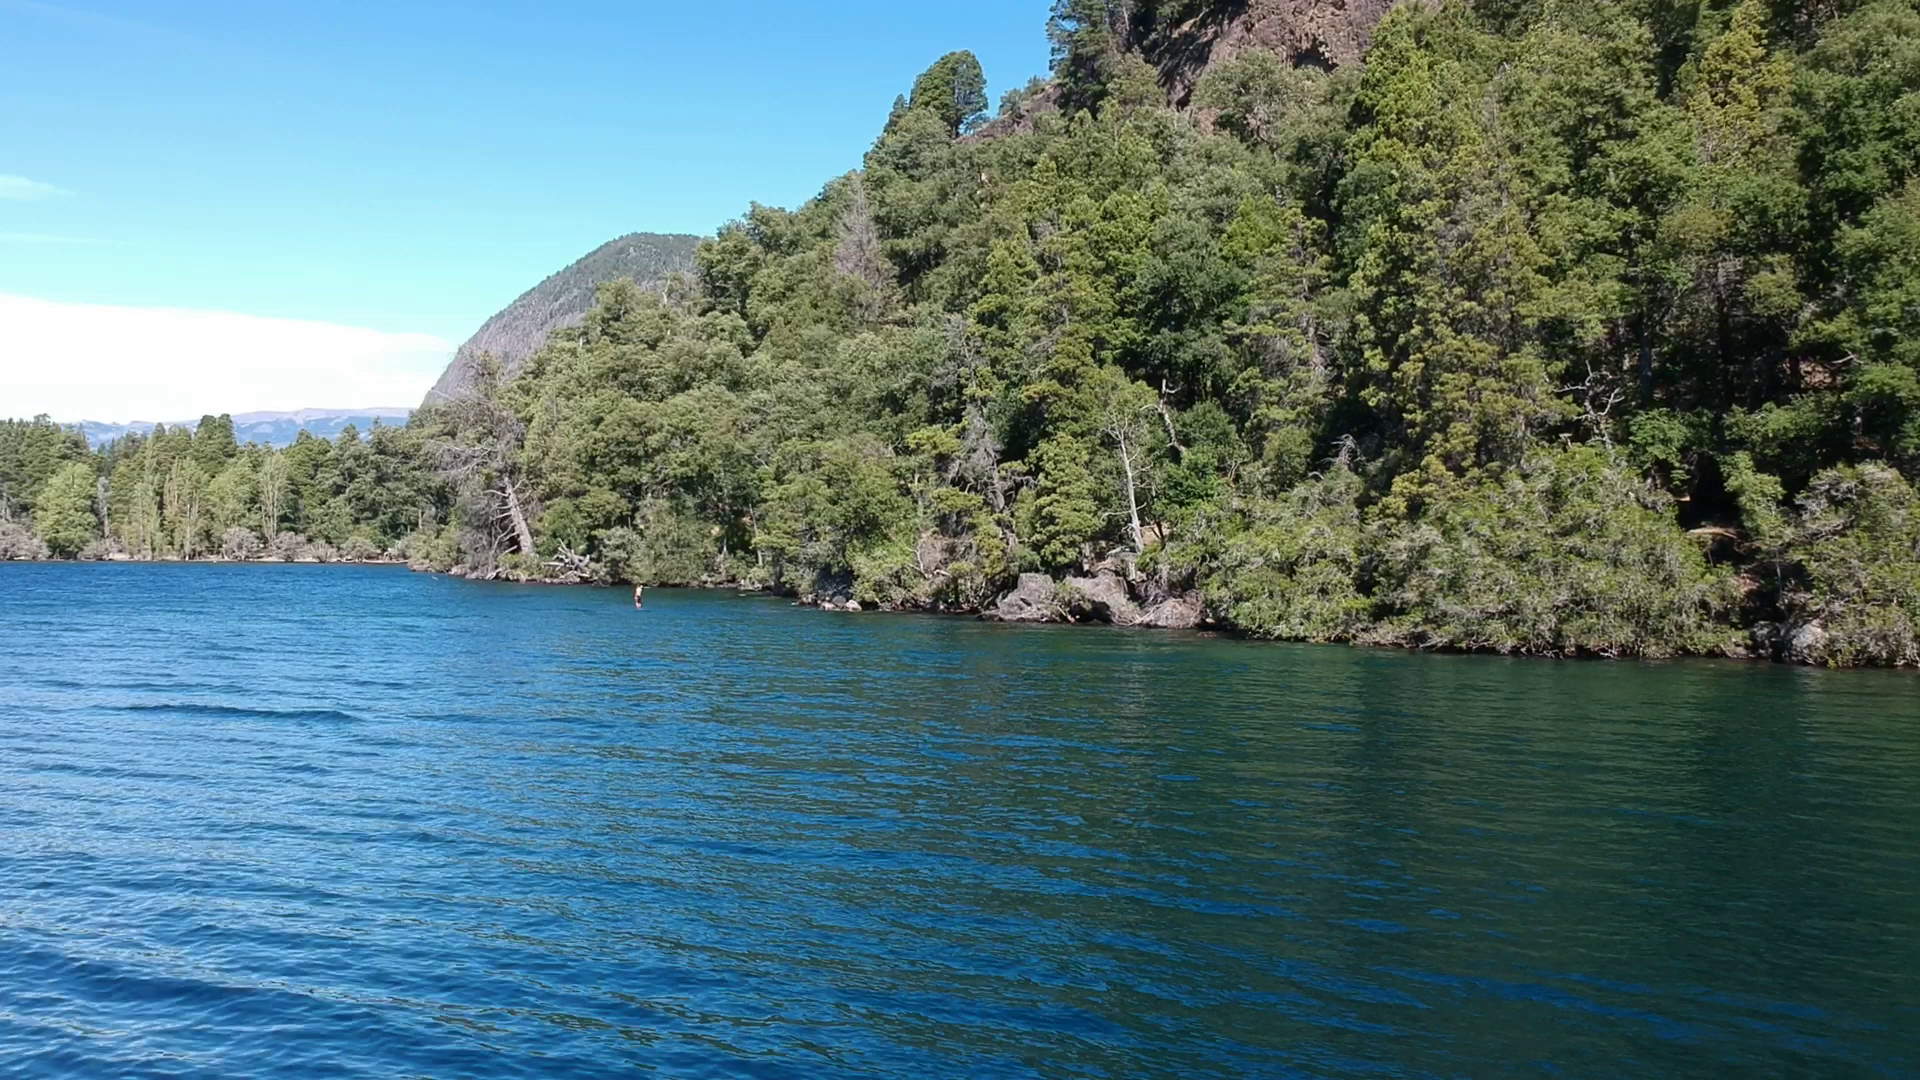 Lago Lacar, San Martin de los Andes, Neuquen, Argentina